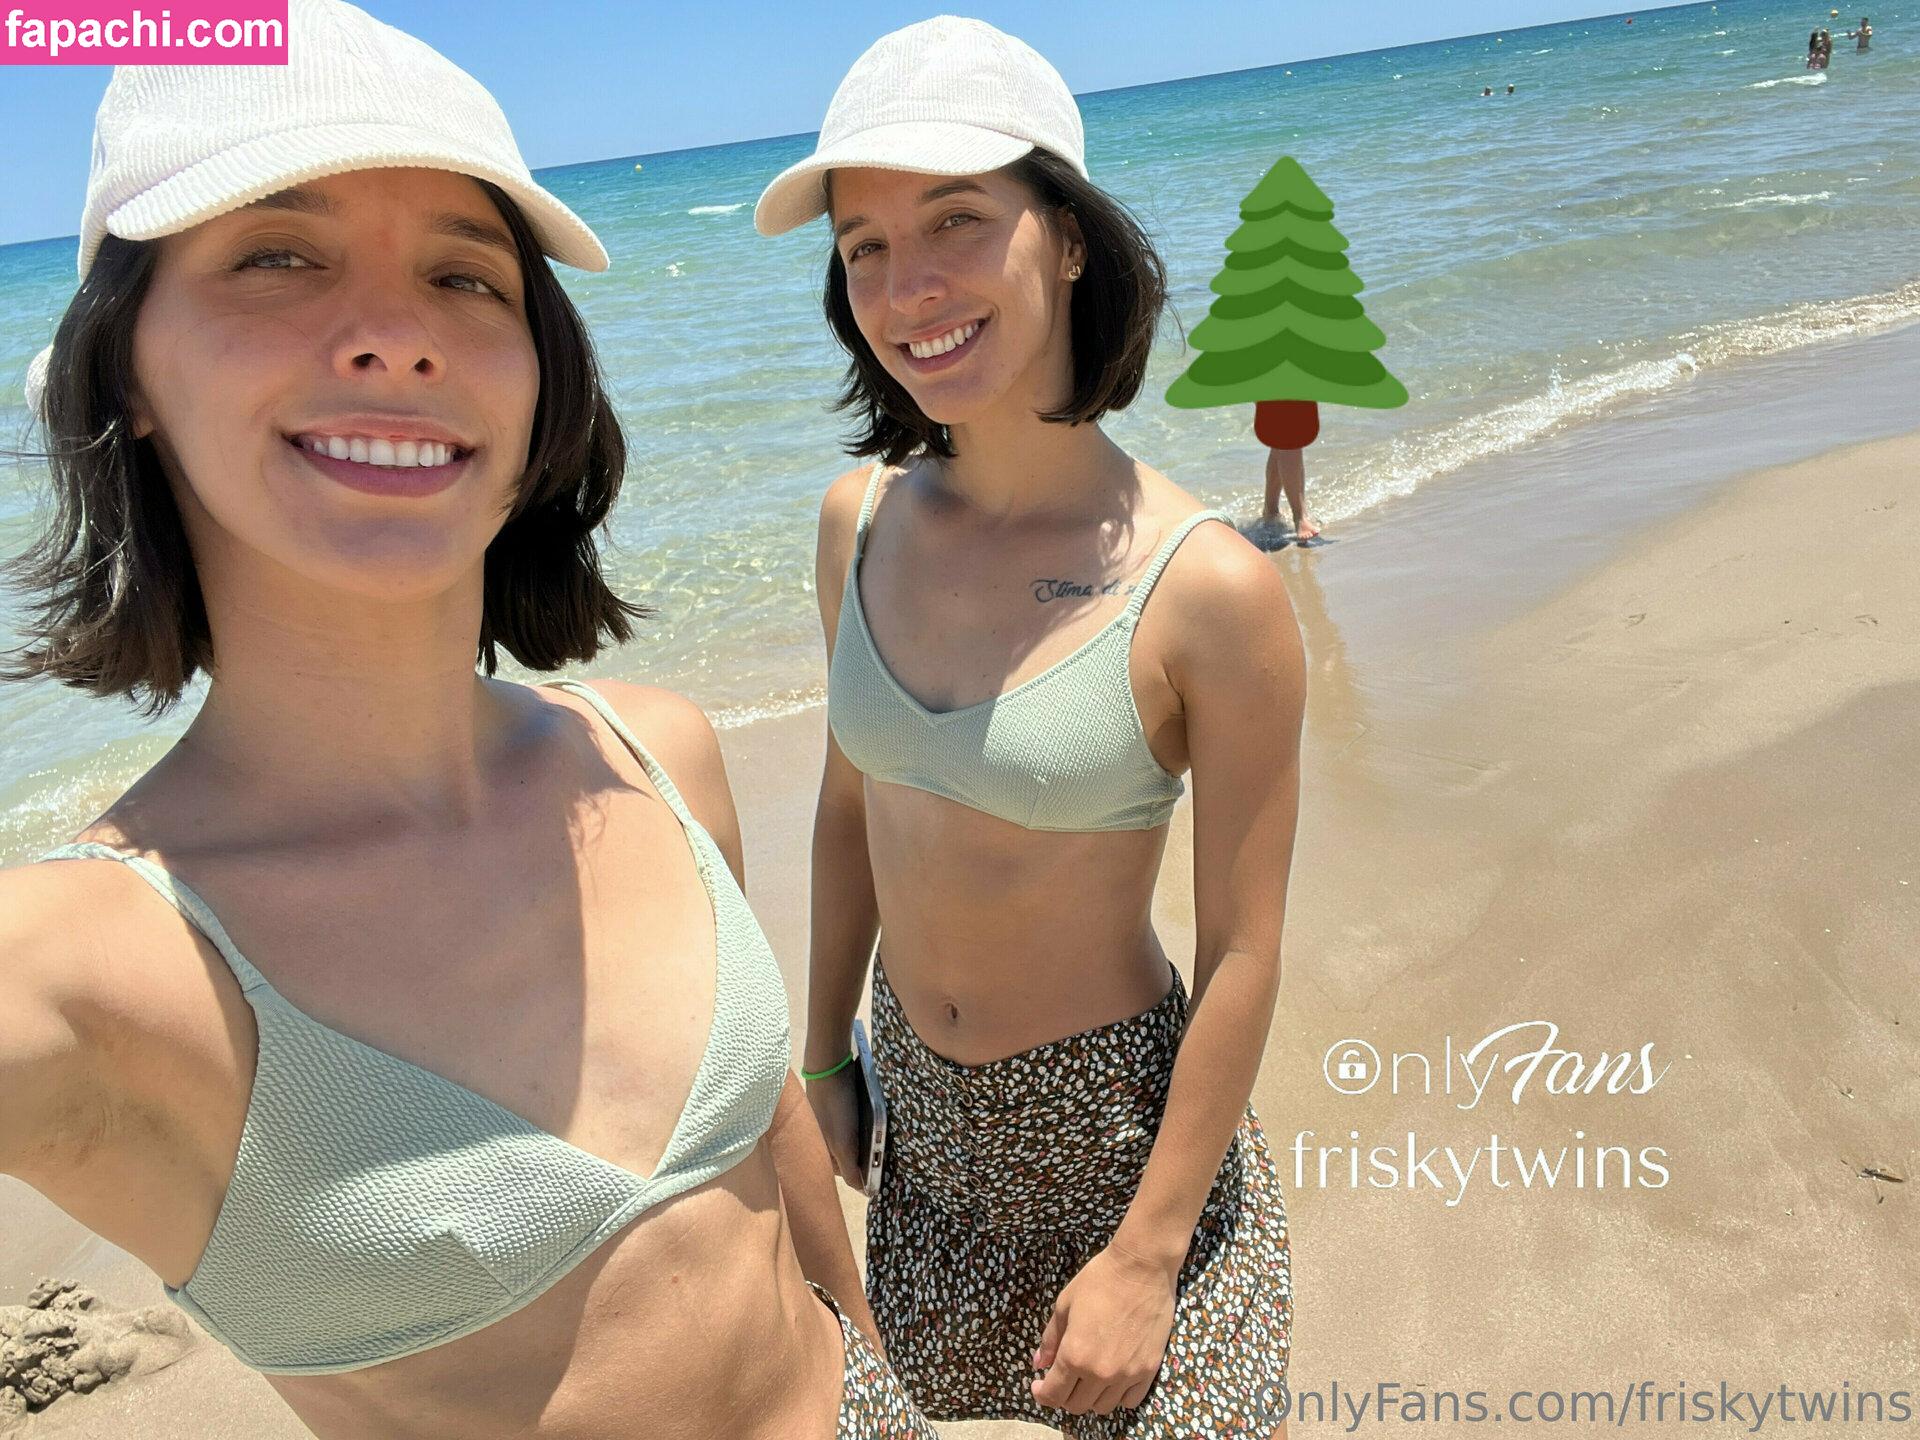 Frisky Twins / FriskyAna / FriskyIsa / frisky_ana / friskytwins leaked nude photo #0119 from OnlyFans/Patreon